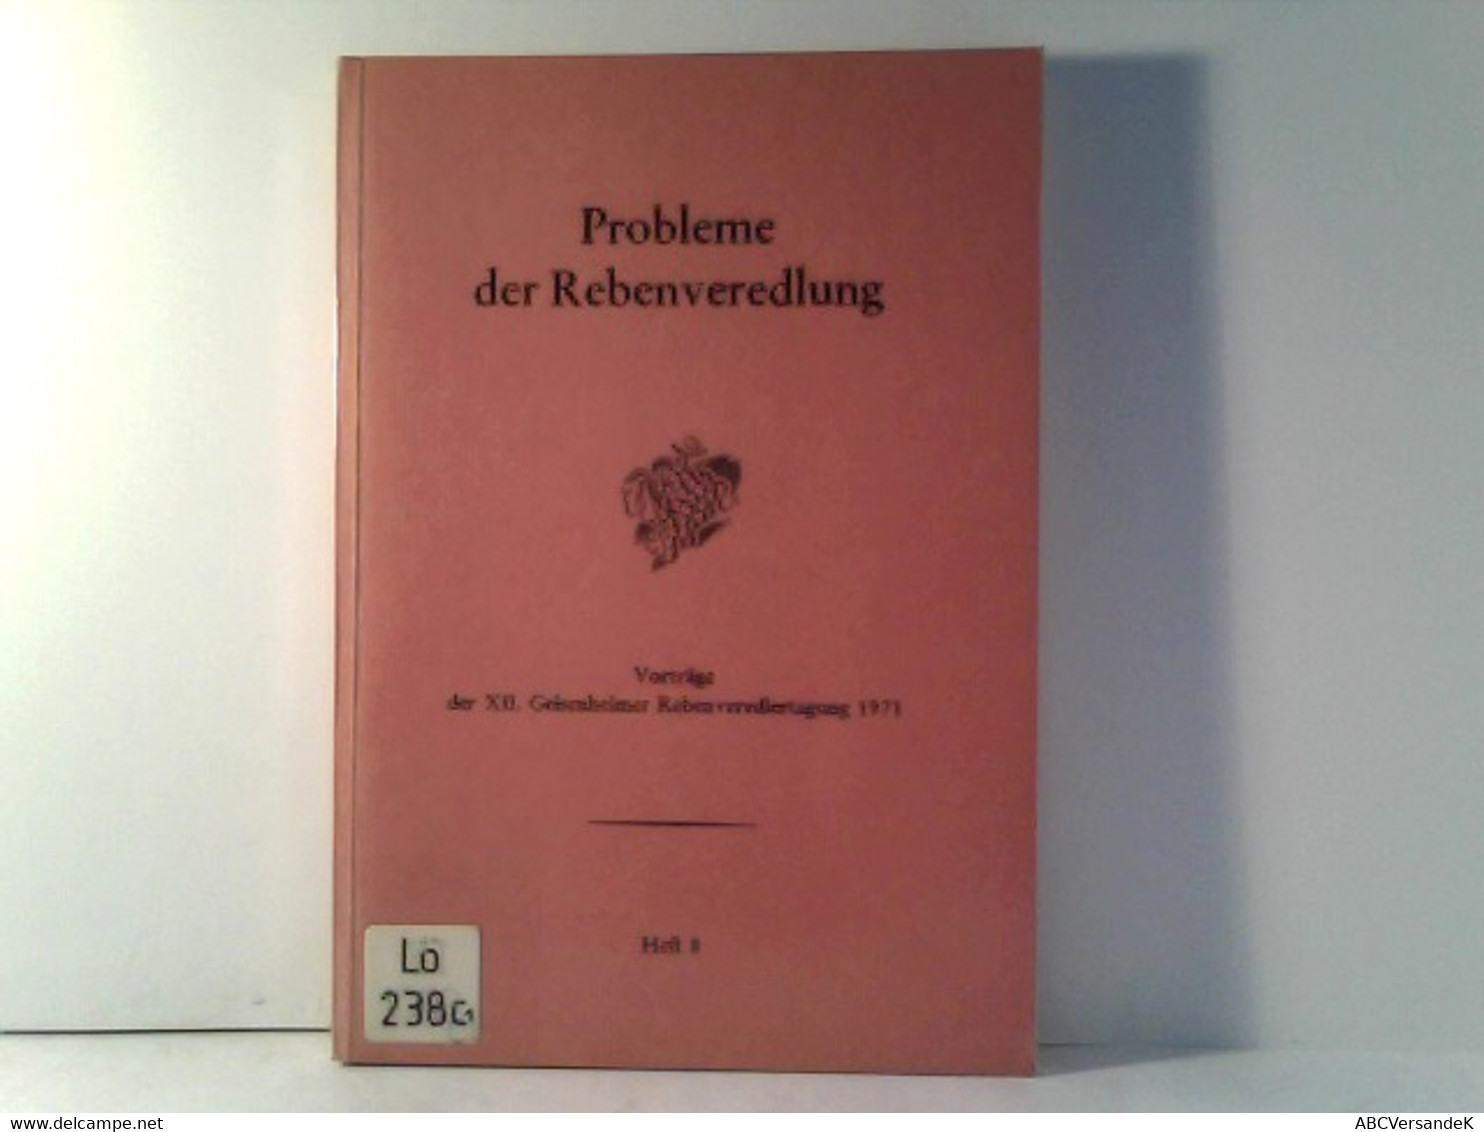 Probleme Der Rebenveredlung - Heft 8 - Vorträge Der XII. Geisenheimer Rebenveredlertagung 1971 - Nature